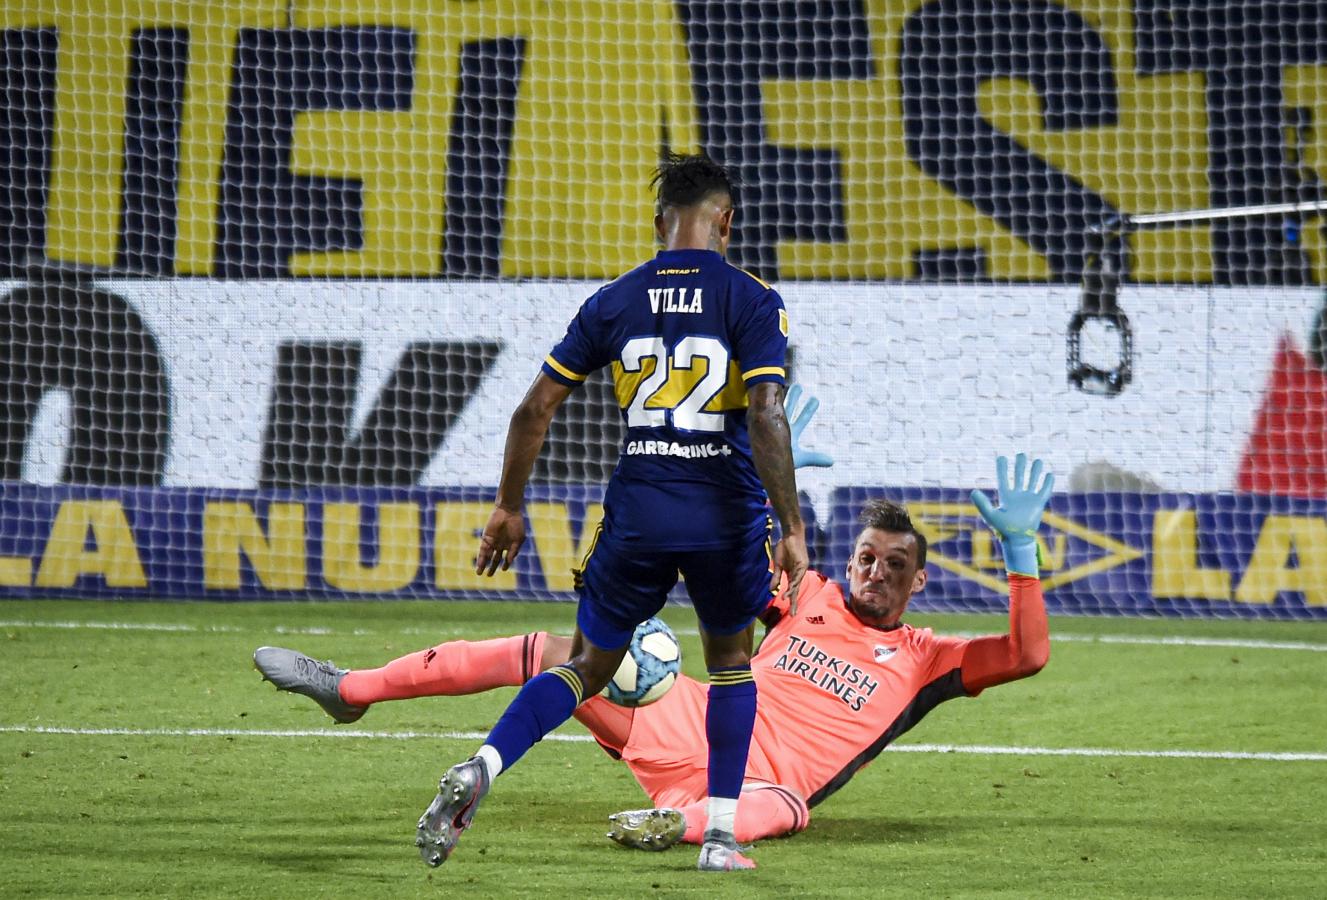 Imagen Pase de Tevez, gol de Villa y Boca logró un valioso 2-2 en La Bombonera